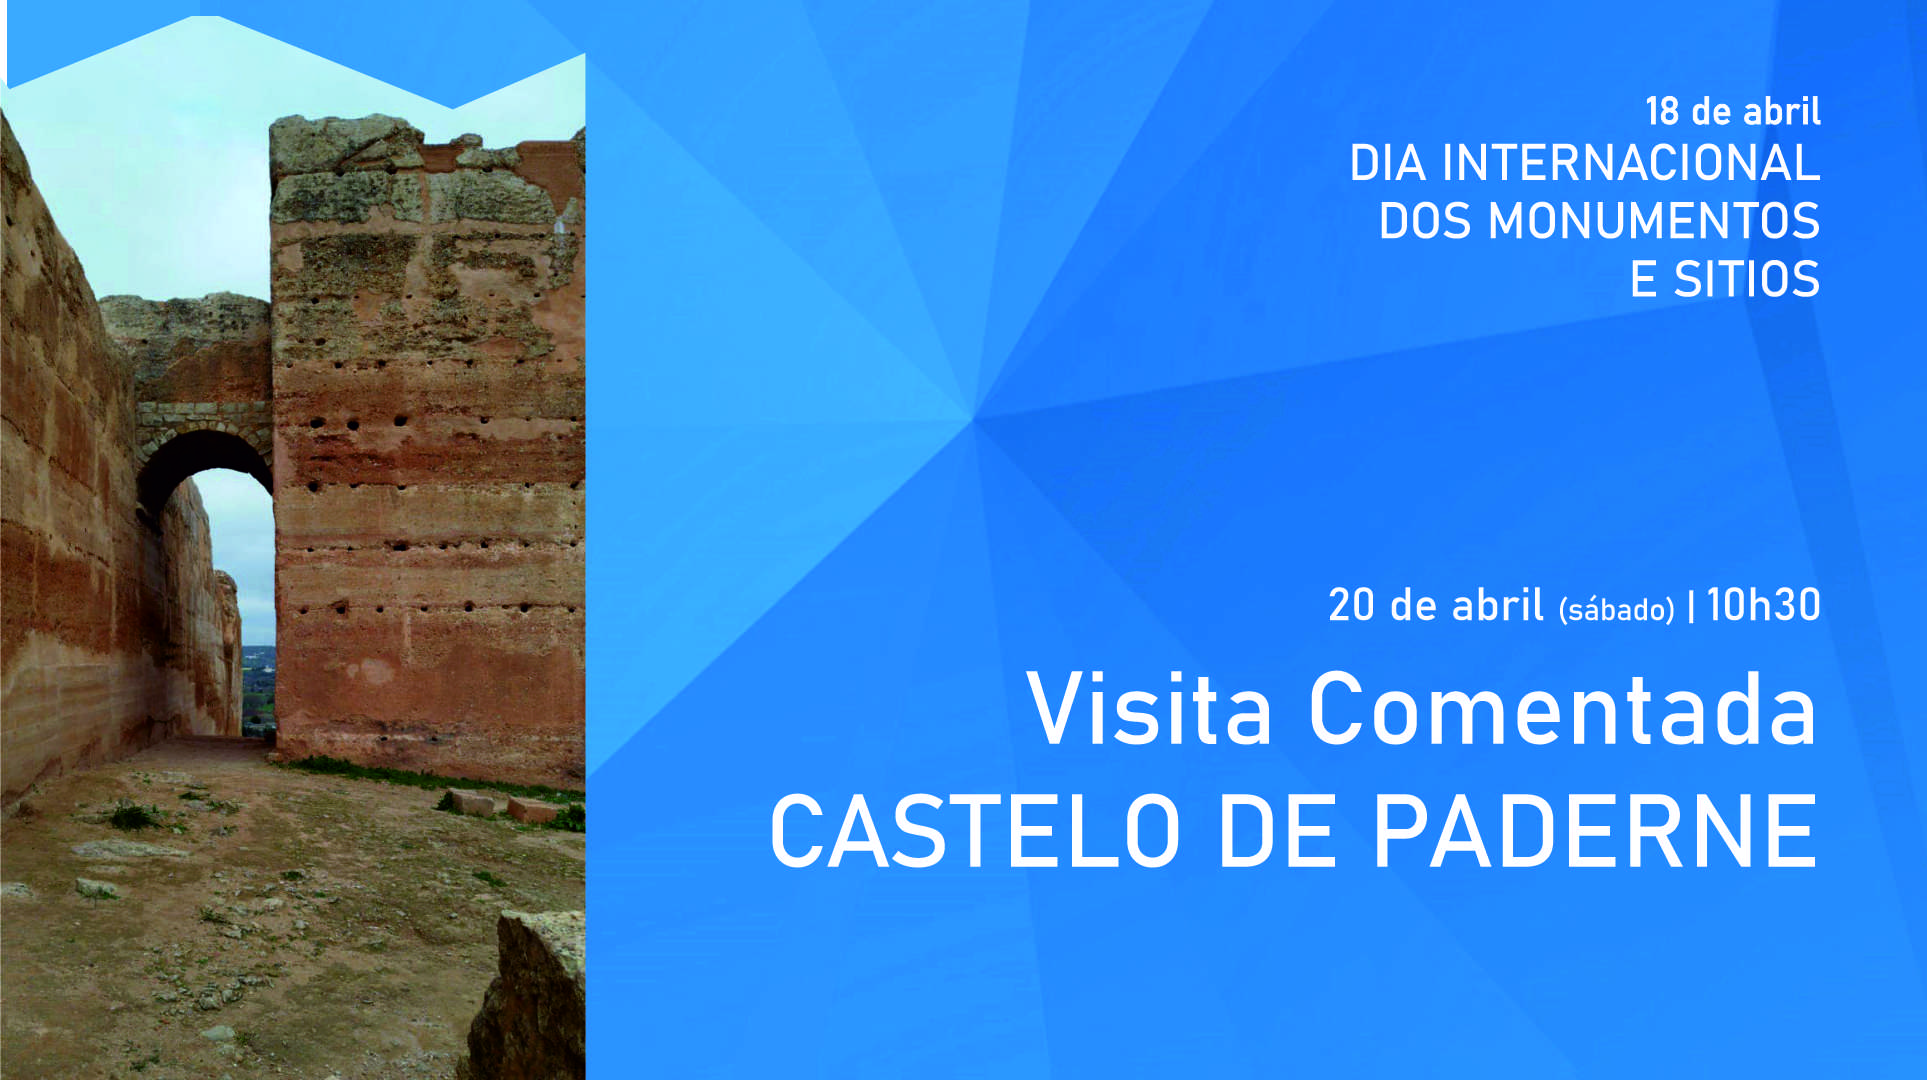 Unidade de Cultura da CCDR Algarve, I.P. e Município de Albufeira Celebram o Dia Internacional dos Monumentos e Sítios no Castelo de Paderne